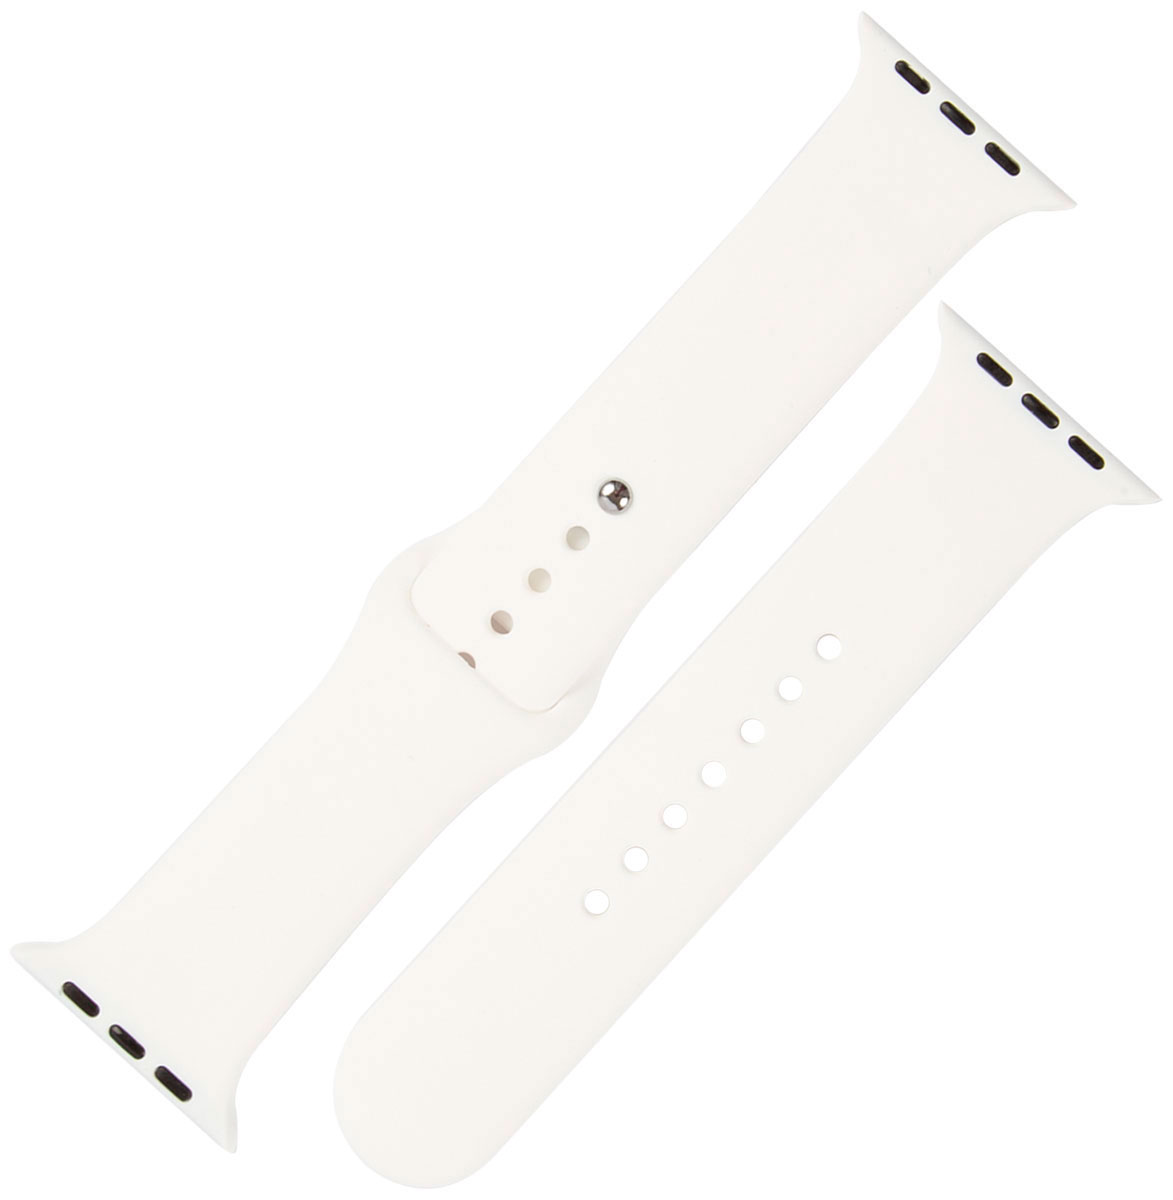 Ремешок силиконовый mObility для Apple watch - 38-40 мм (S3/S4/S5 SE/S6), белый ремешок red line силиконовый двухцветный для apple watch 38 40 mm s3 s4 s5 se s6 черно красный ут000022899